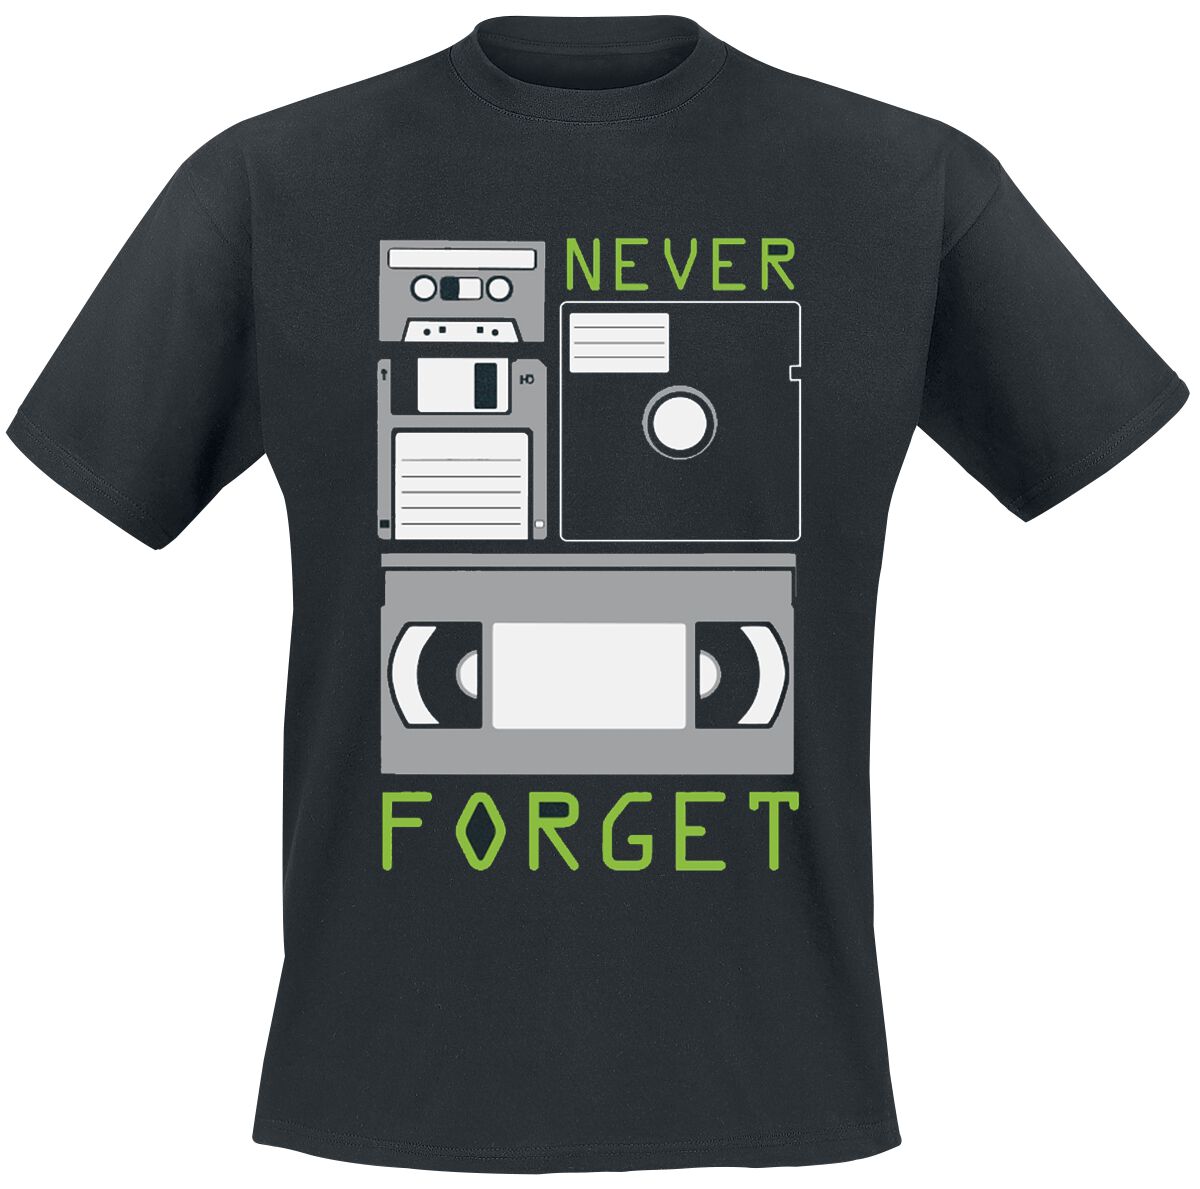 Sprüche T-Shirt - Never Forget - M bis 3XL - für Männer - Größe L - schwarz